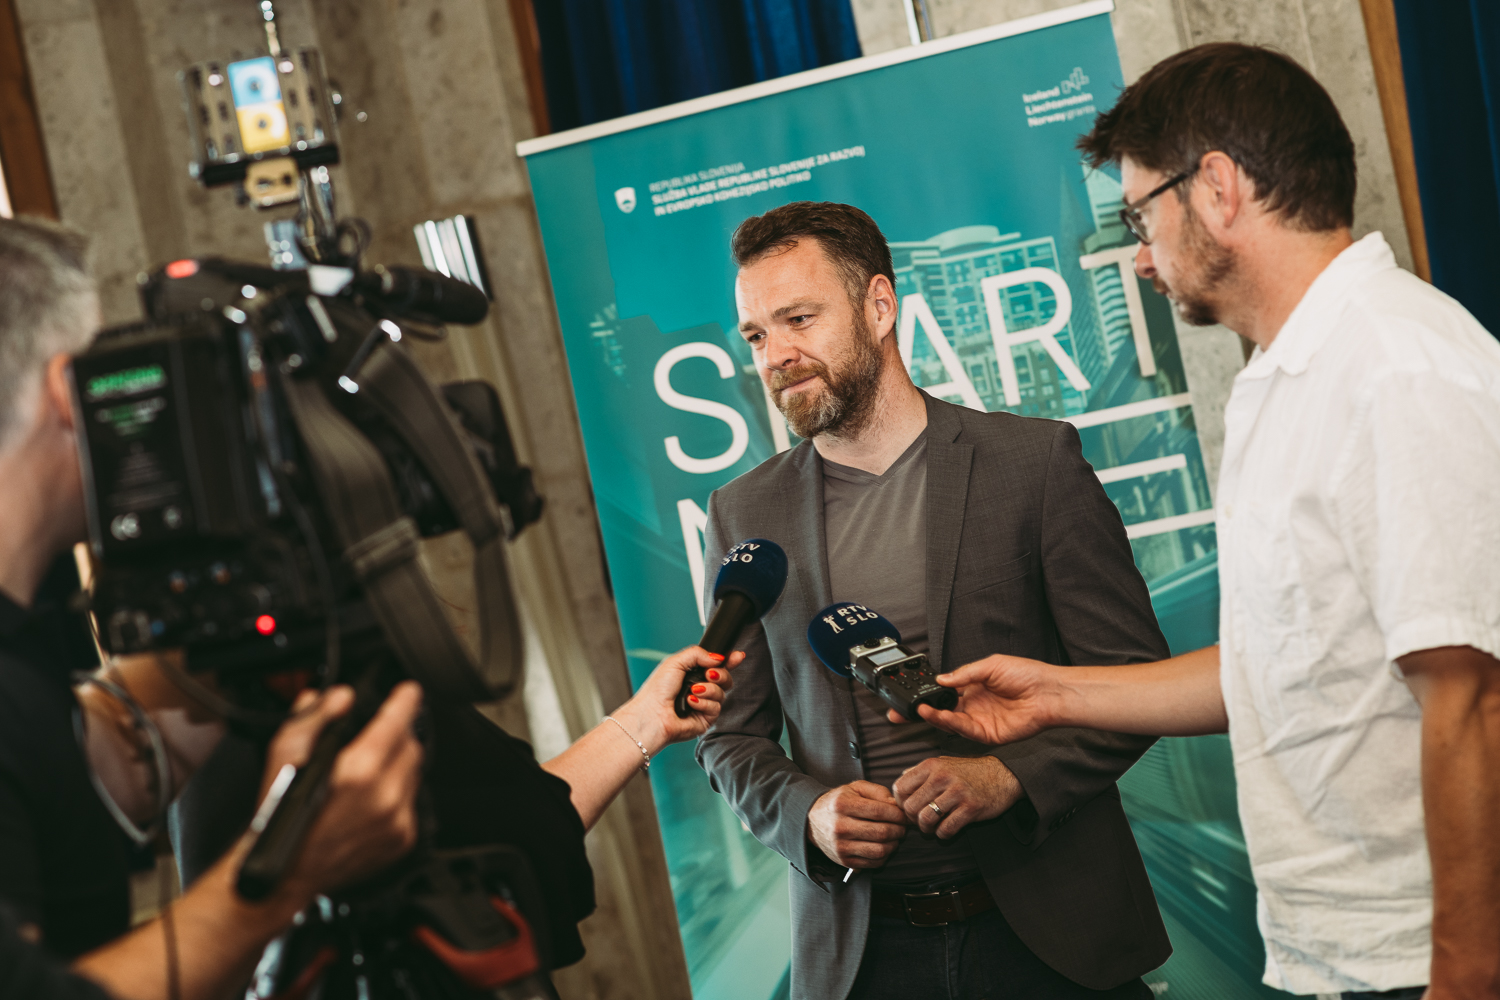 Moškega pred promocijskim plakatom intervjujvata dva novinarja, ki v roki držita mikrofon, kamerman snema s kamero.